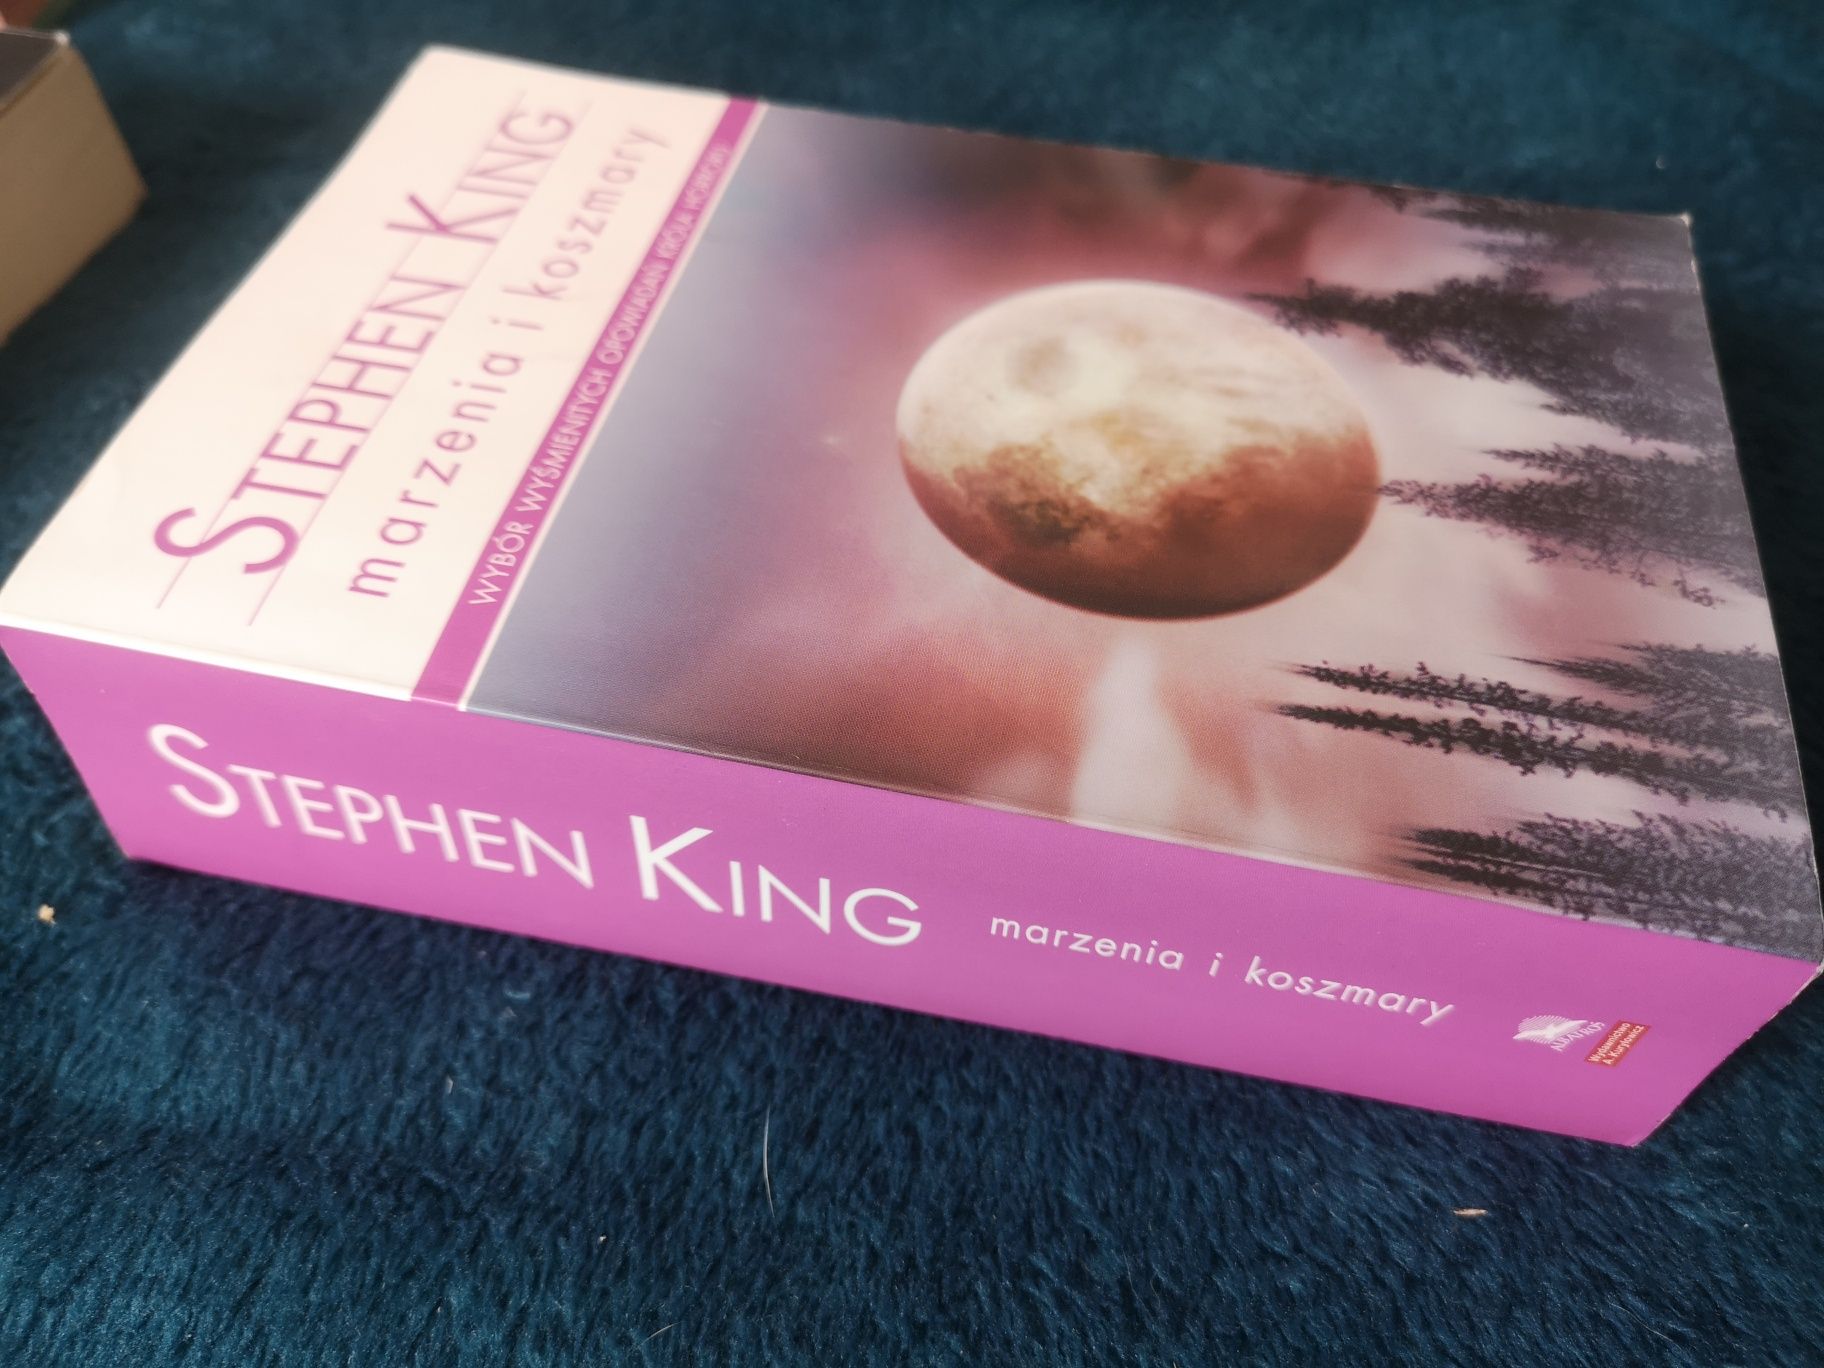 Stephen king opowiadania - marzenia i koszmary, wydanie kieszonkowe